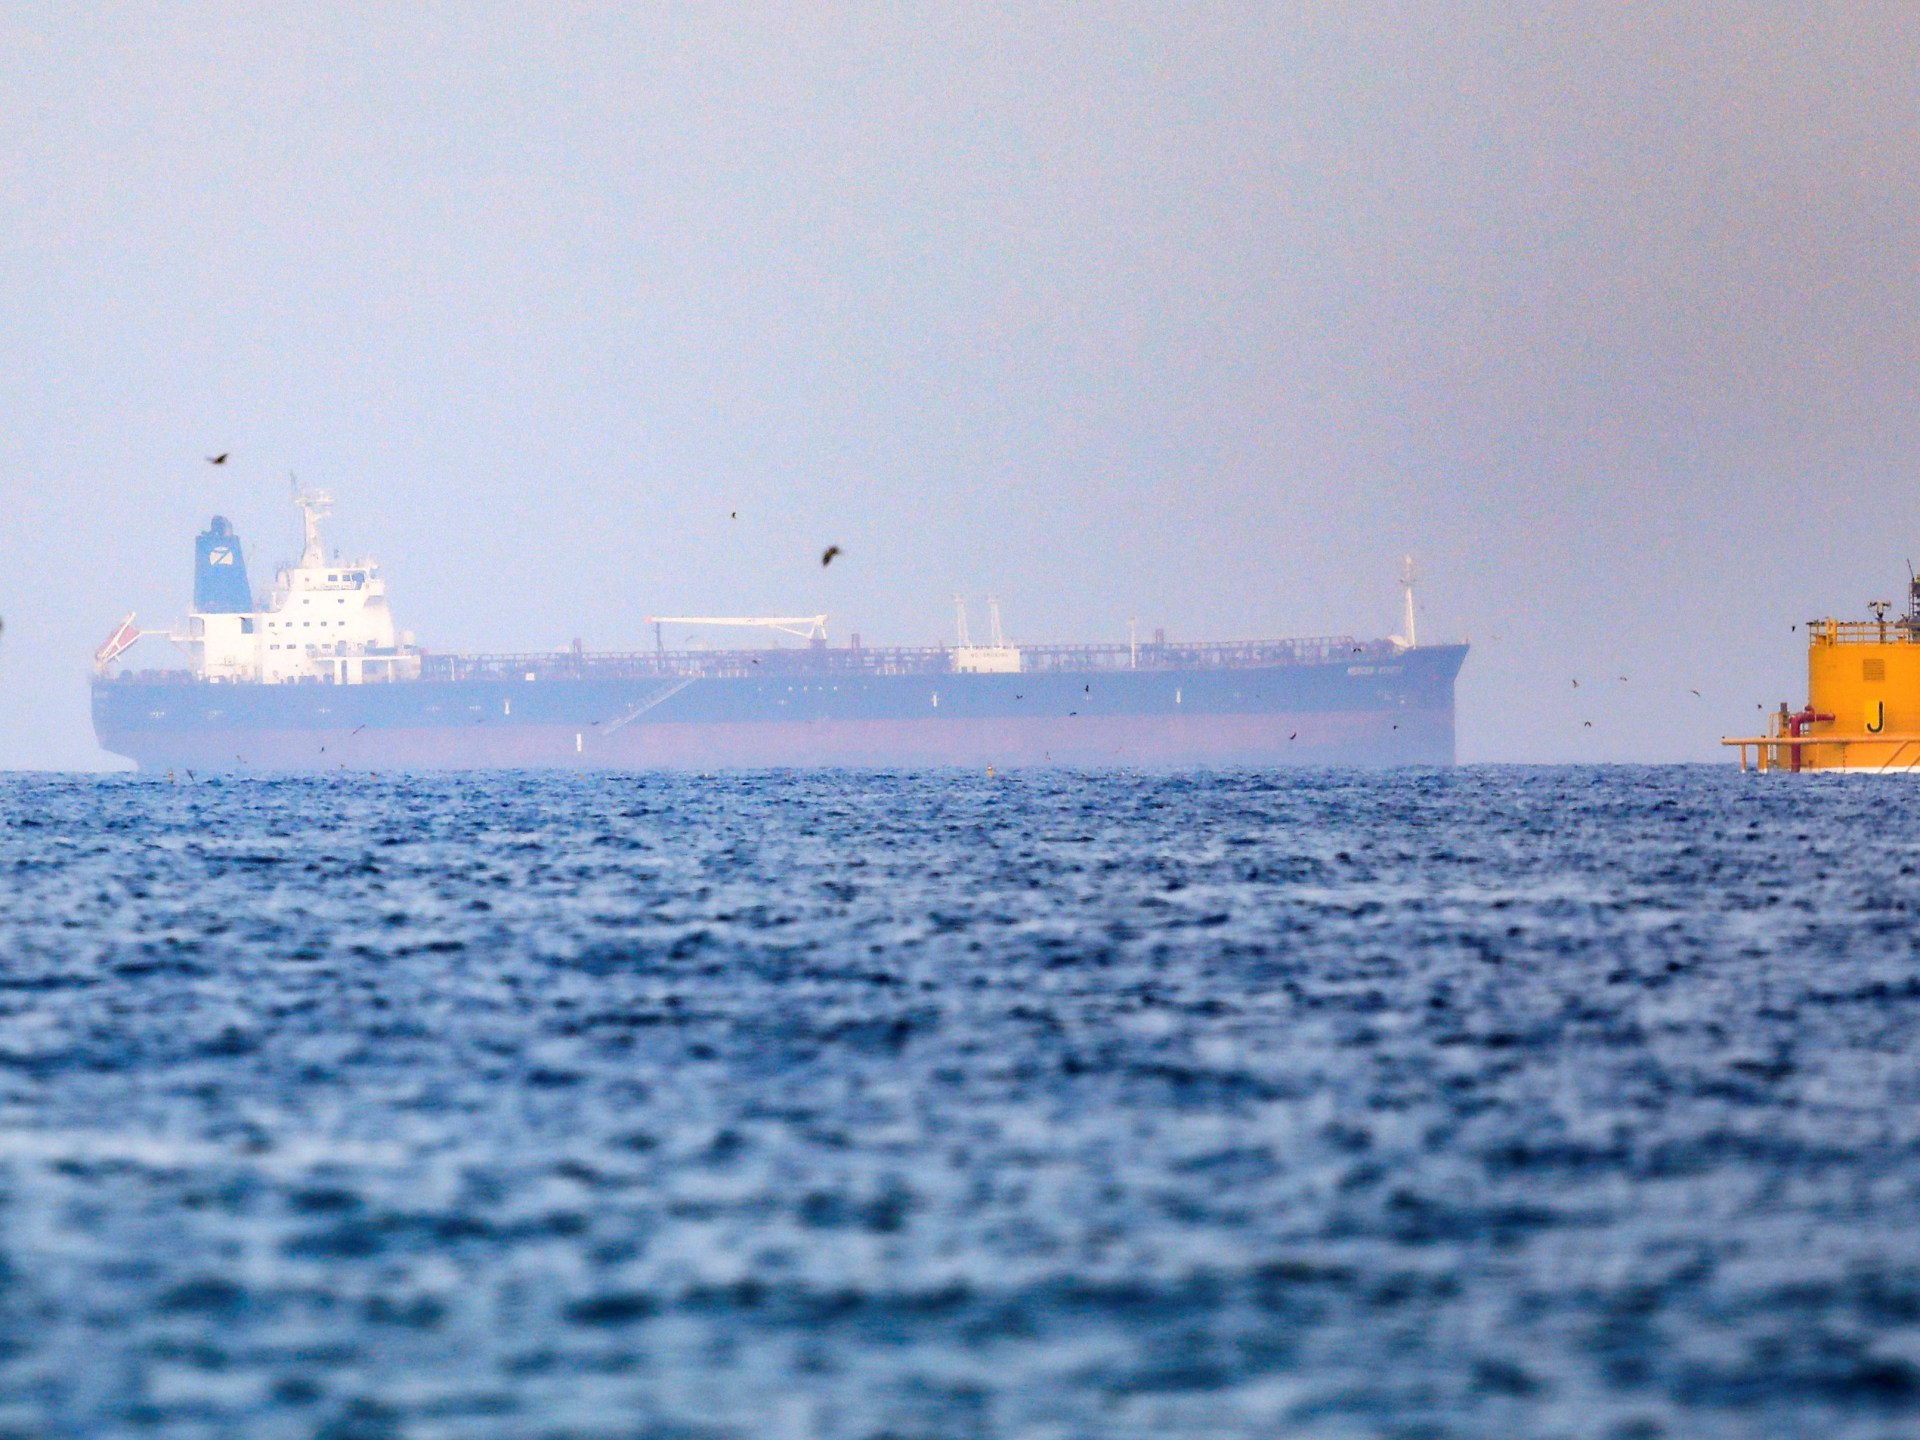 Iran merebut kapal tanker minyak kedua dalam seminggu di tengah konfrontasi AS |  Berita